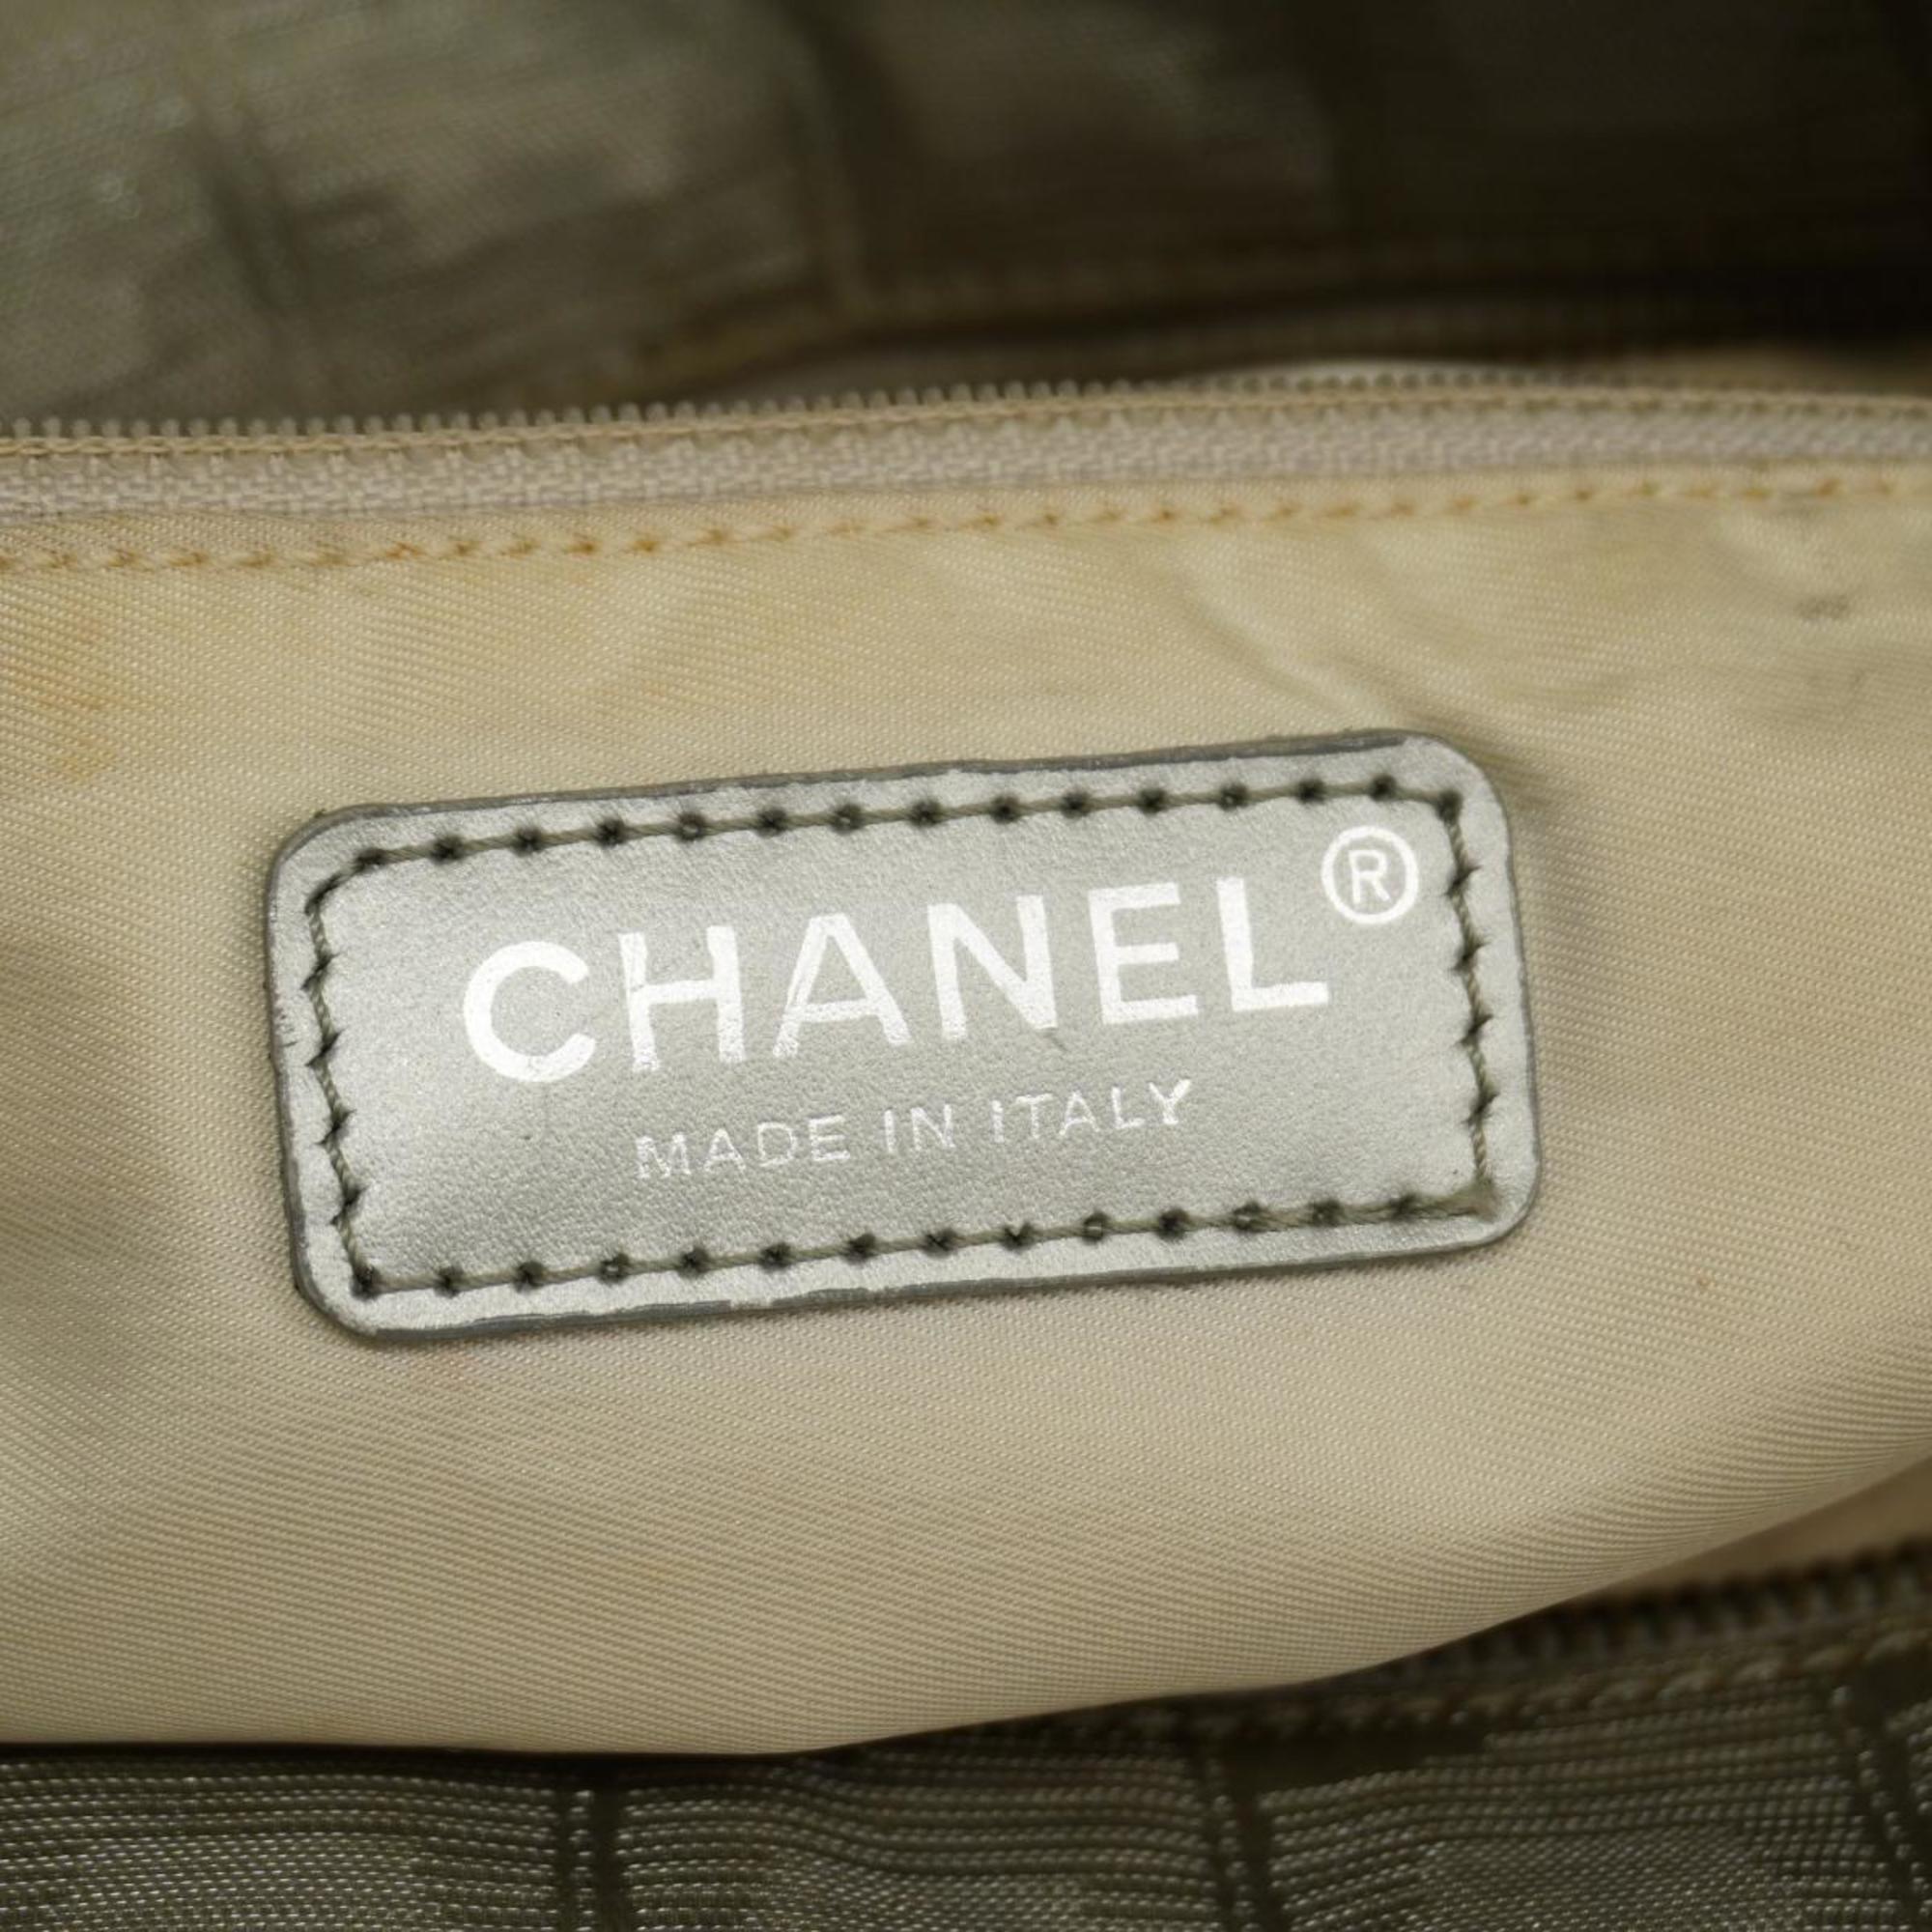 シャネル(Chanel) シャネル トートバッグ ニュートラベル ナイロン グレー  レディース